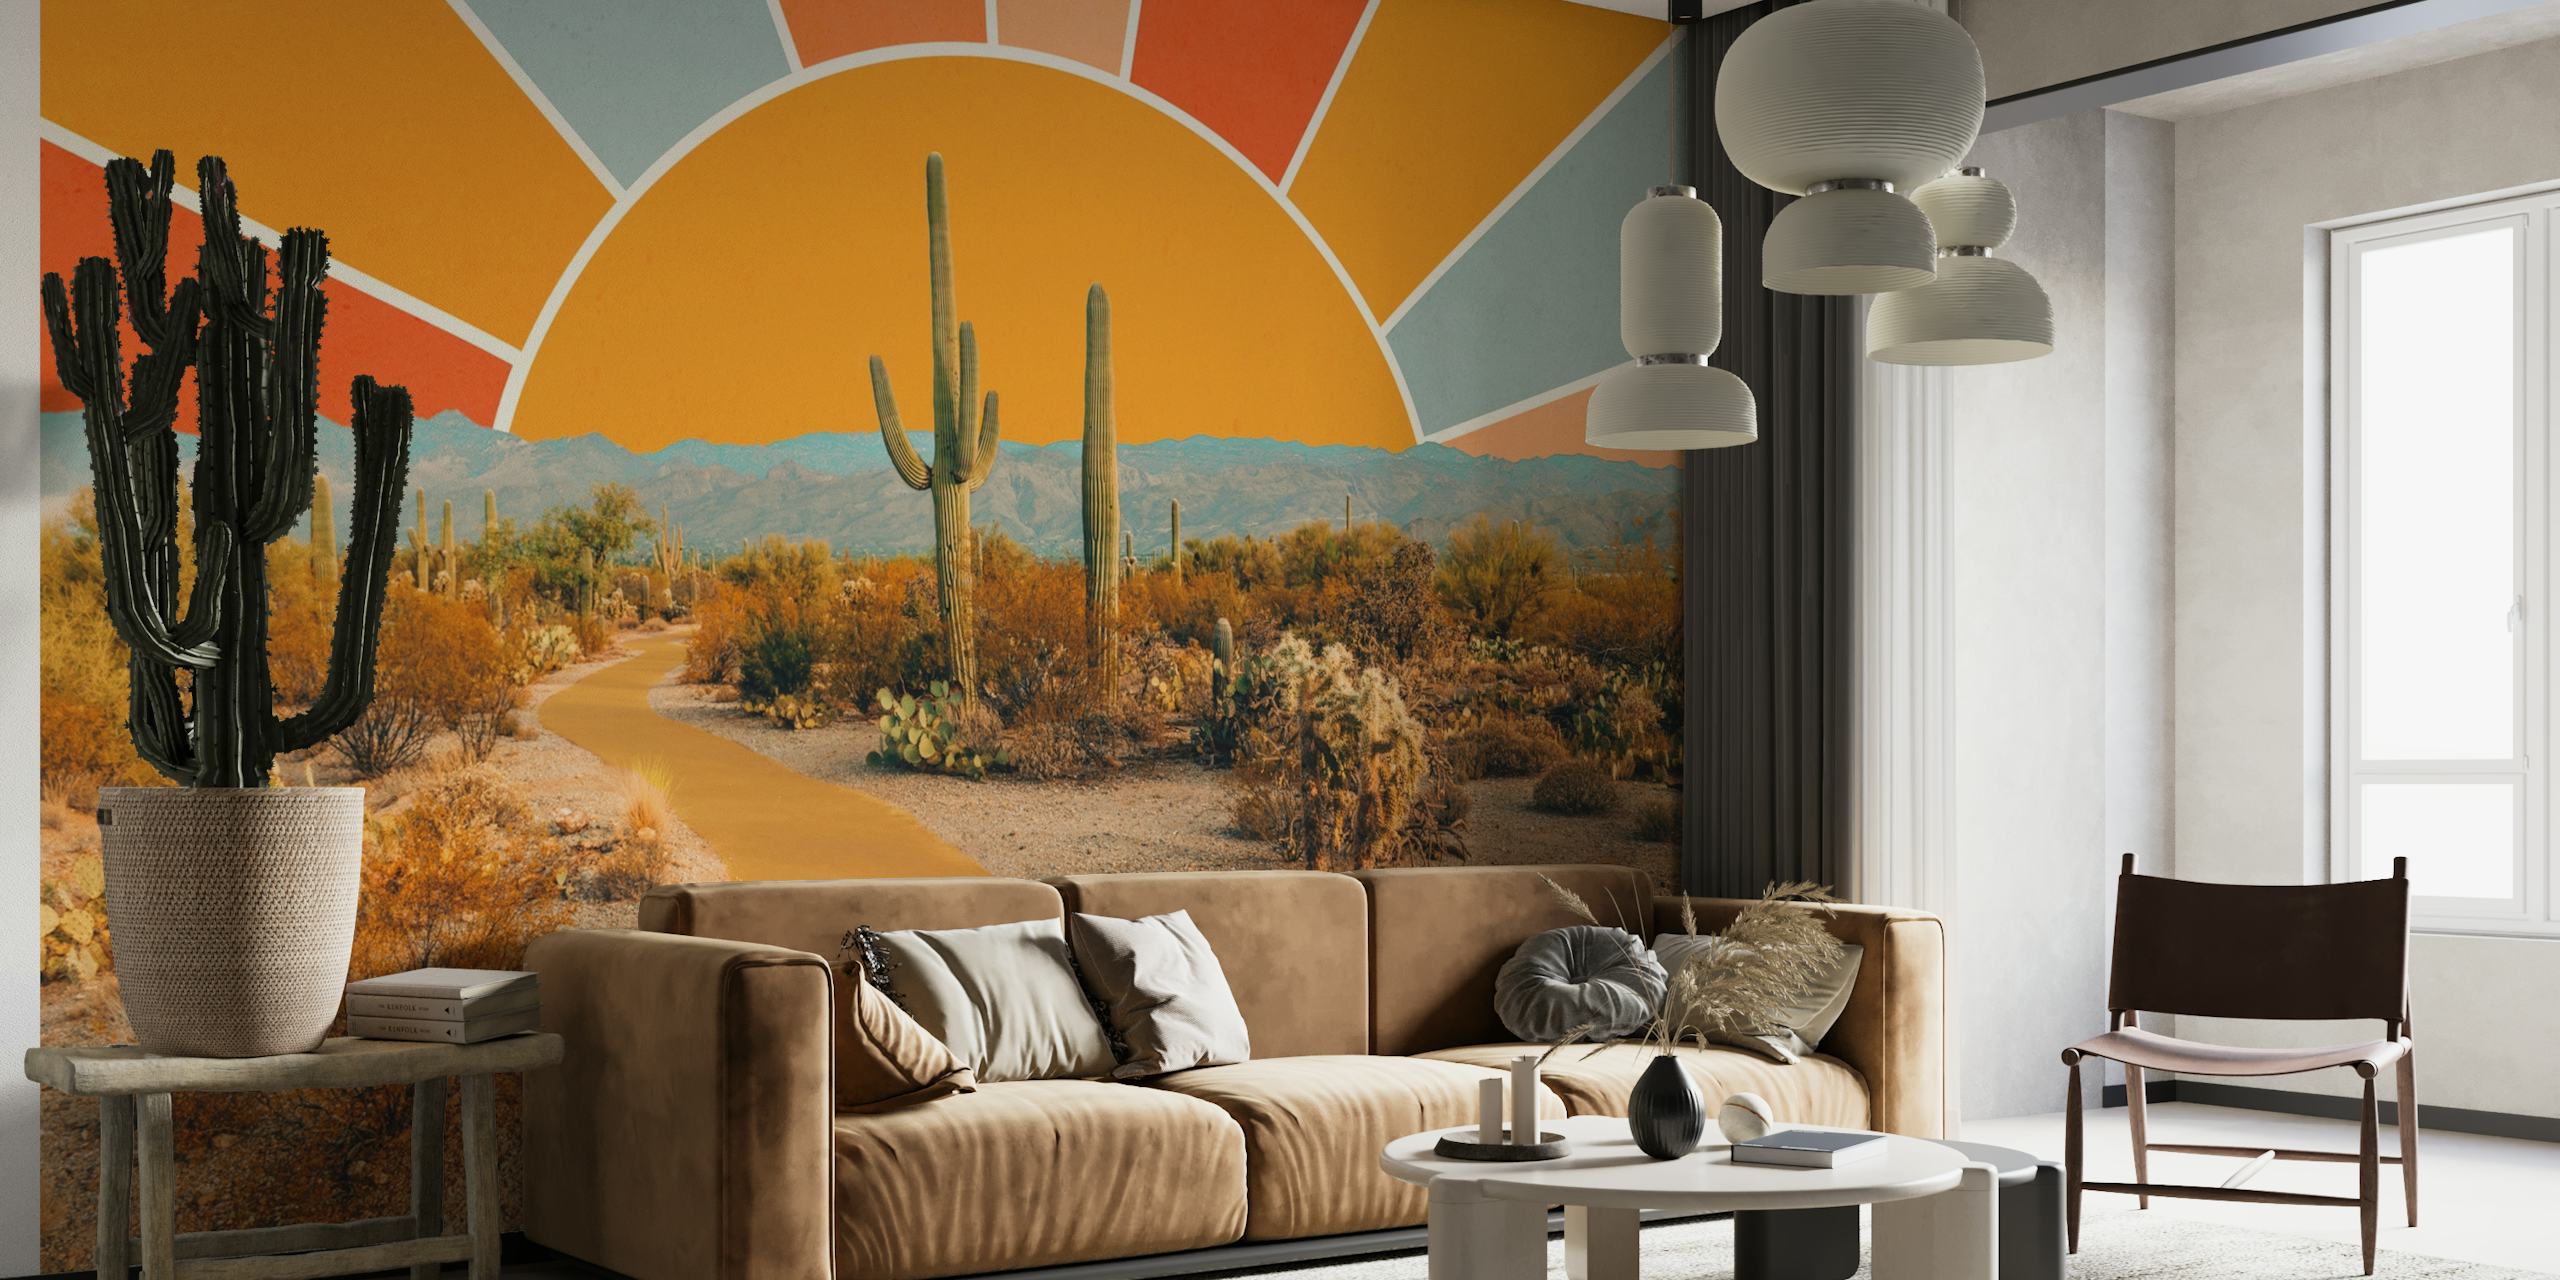 Artystyczna fototapeta ze sceną pustynną z kaktusami i ciepłym motywem słońca